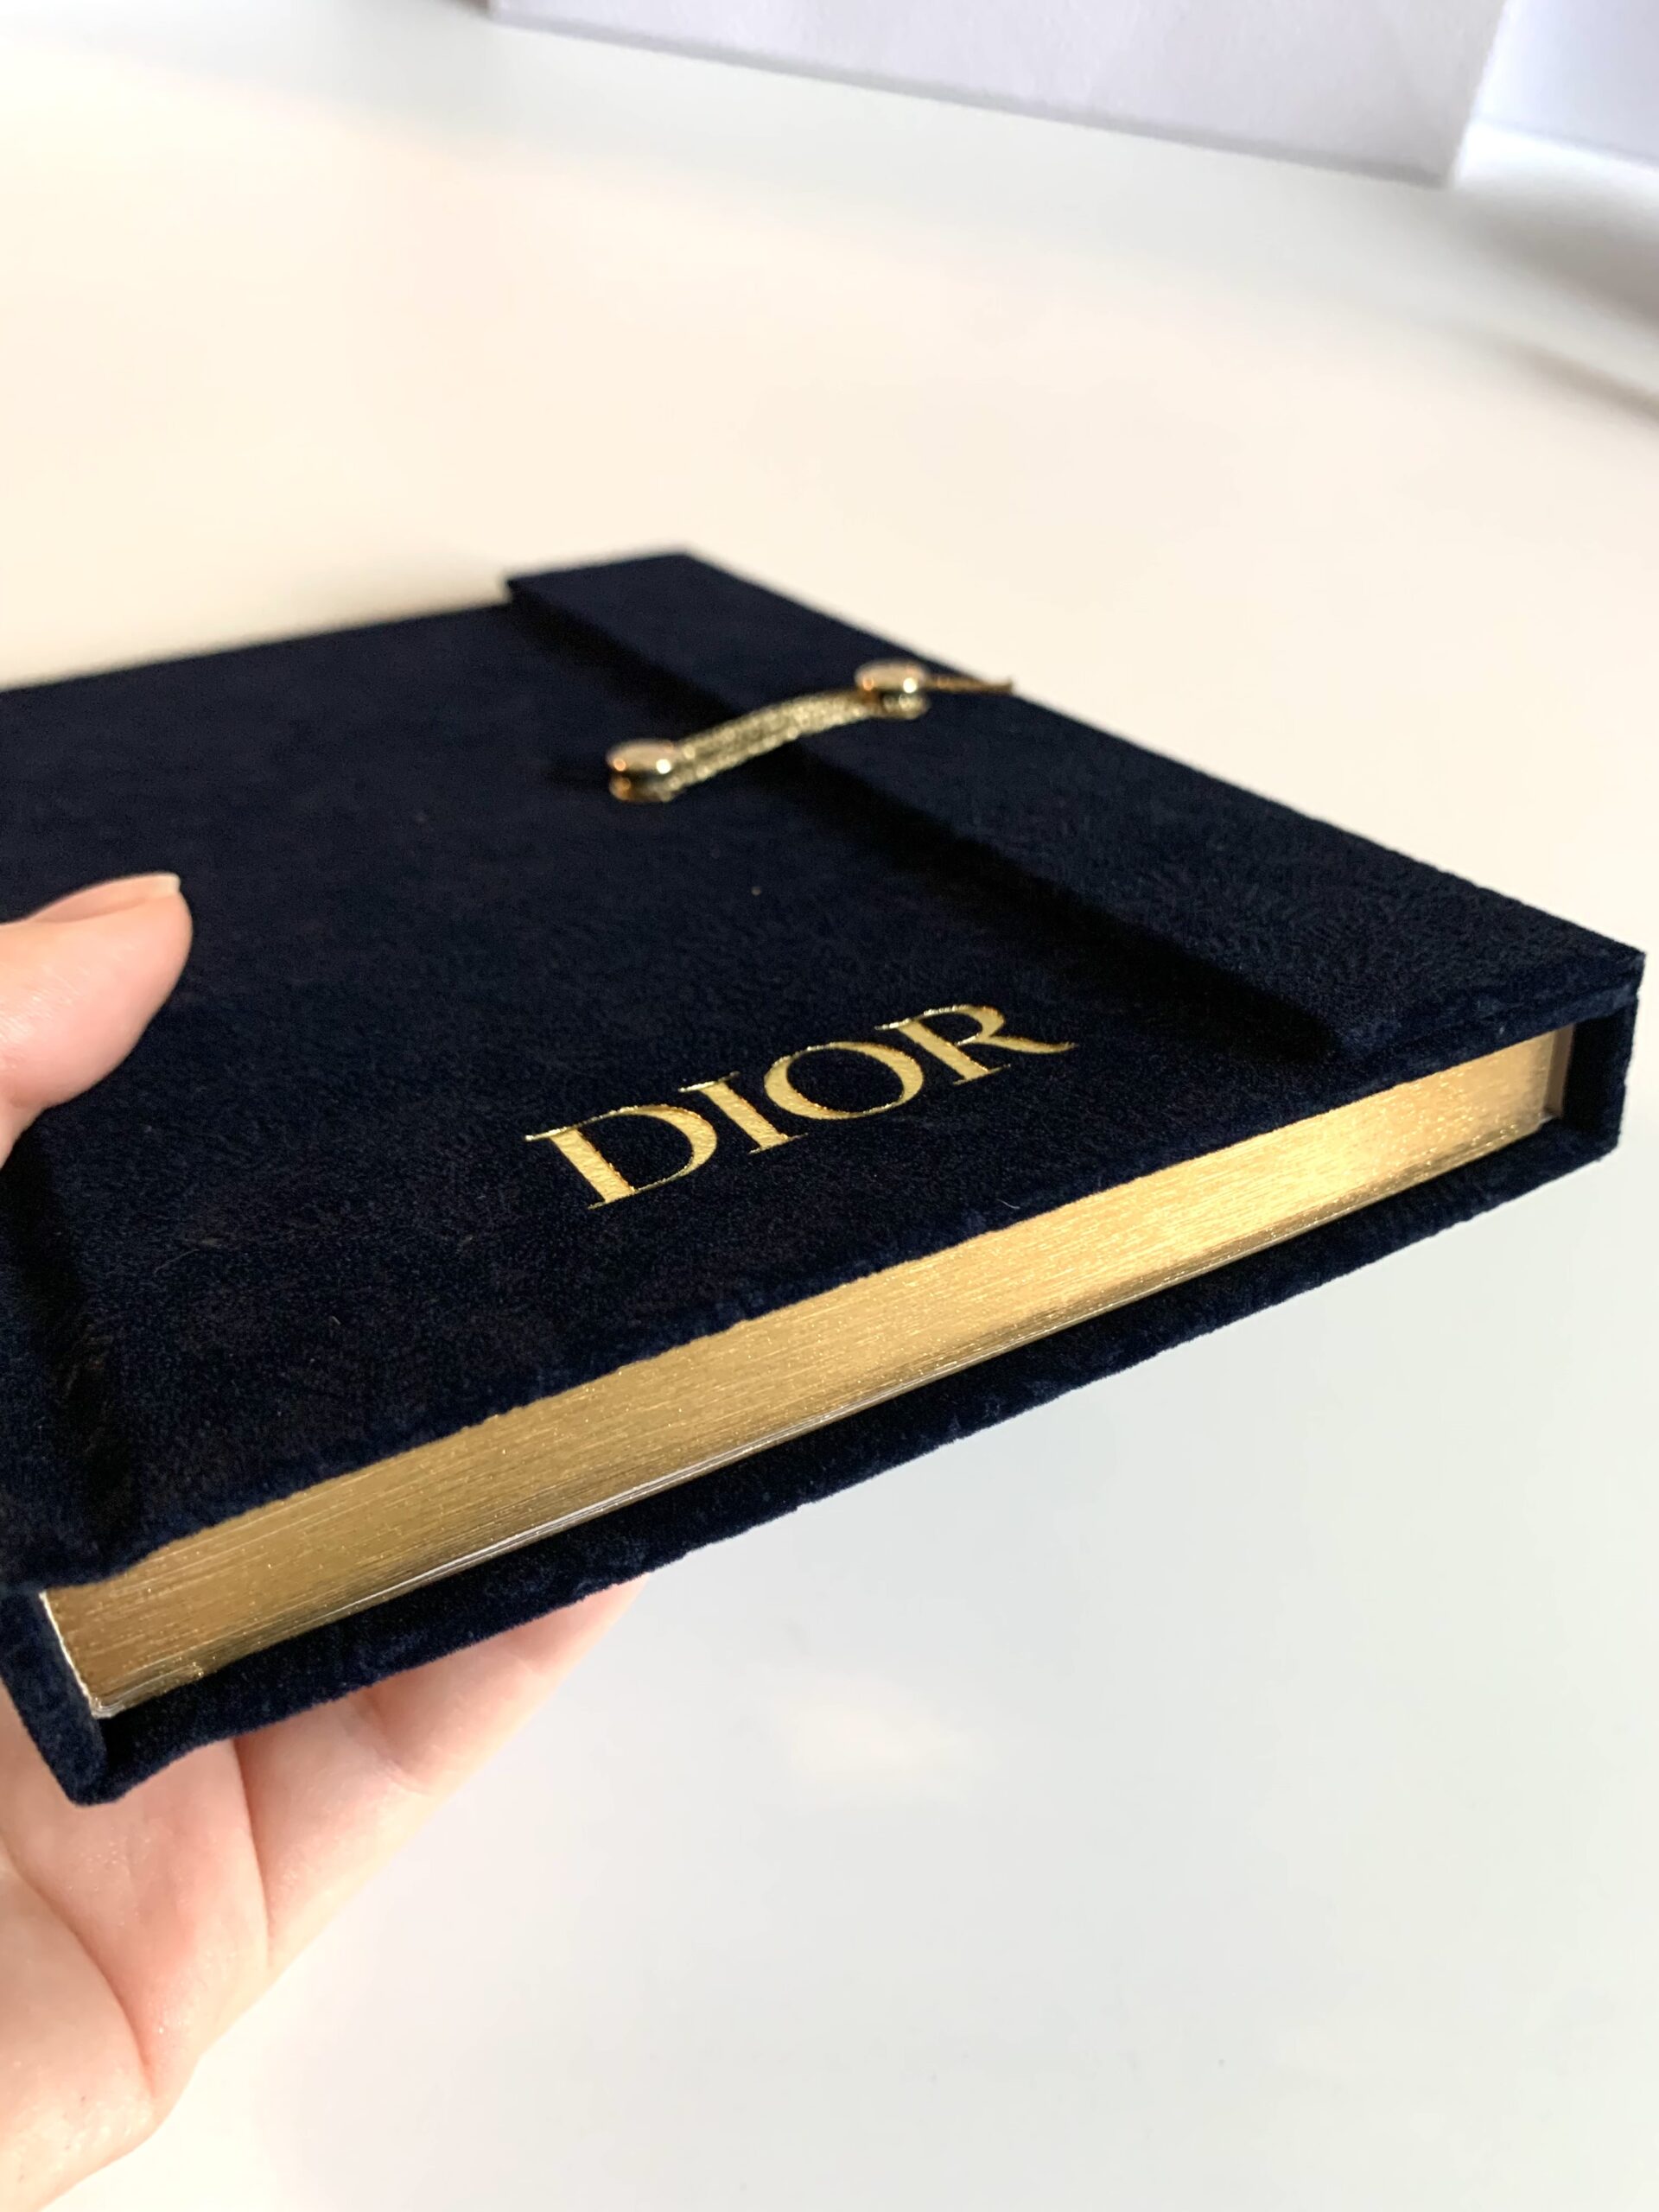 Dior10月の最新ノベルティ、ノートとポーチもらってきた！【ディオール・2021年秋】 – AyasStyle